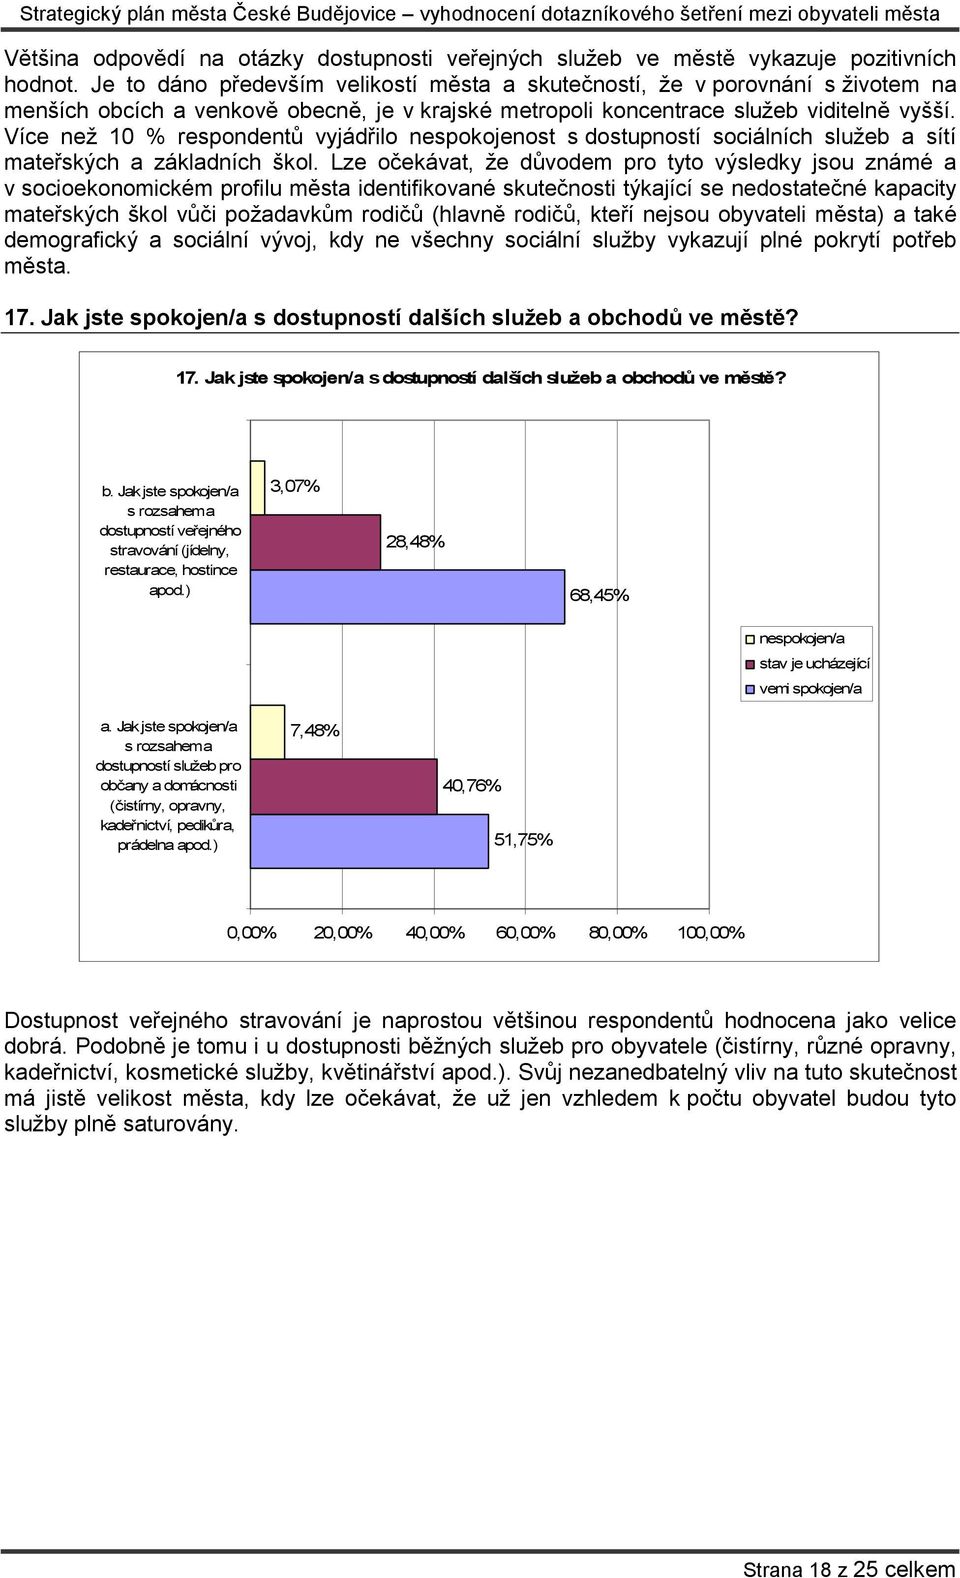 Více než 10 % respondentů vyjádřilo nespokojenost s dostupností sociálních služeb a sítí mateřských a základních škol.